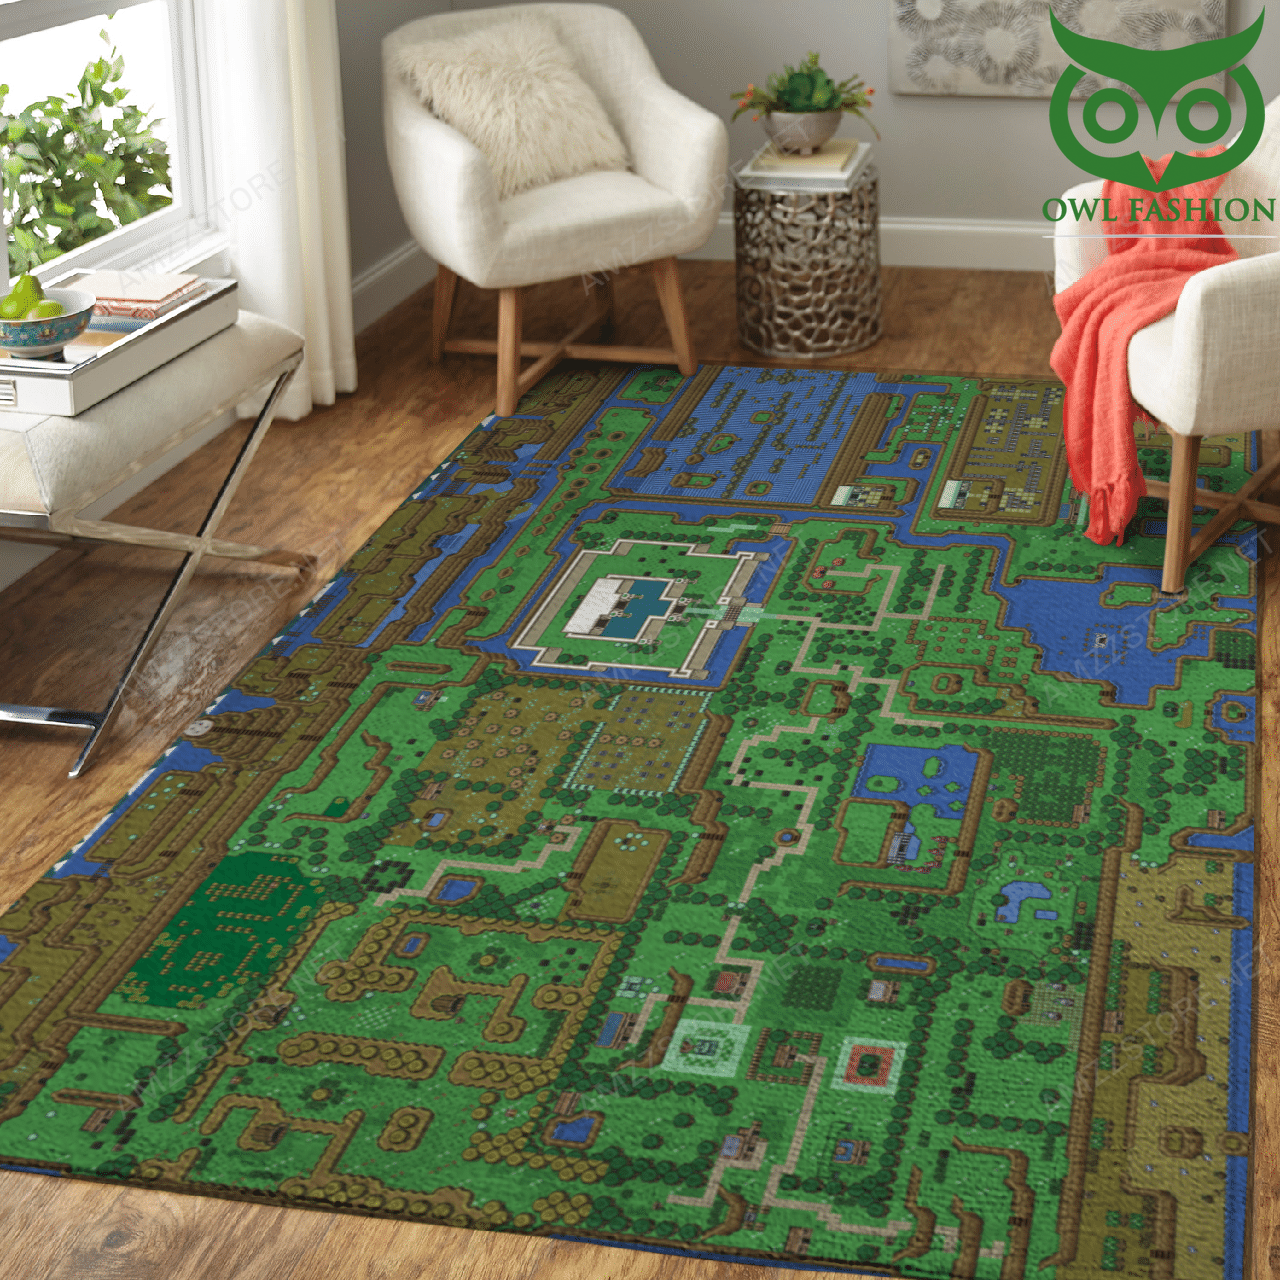 Legend of Zelda Full map Carpet Rug